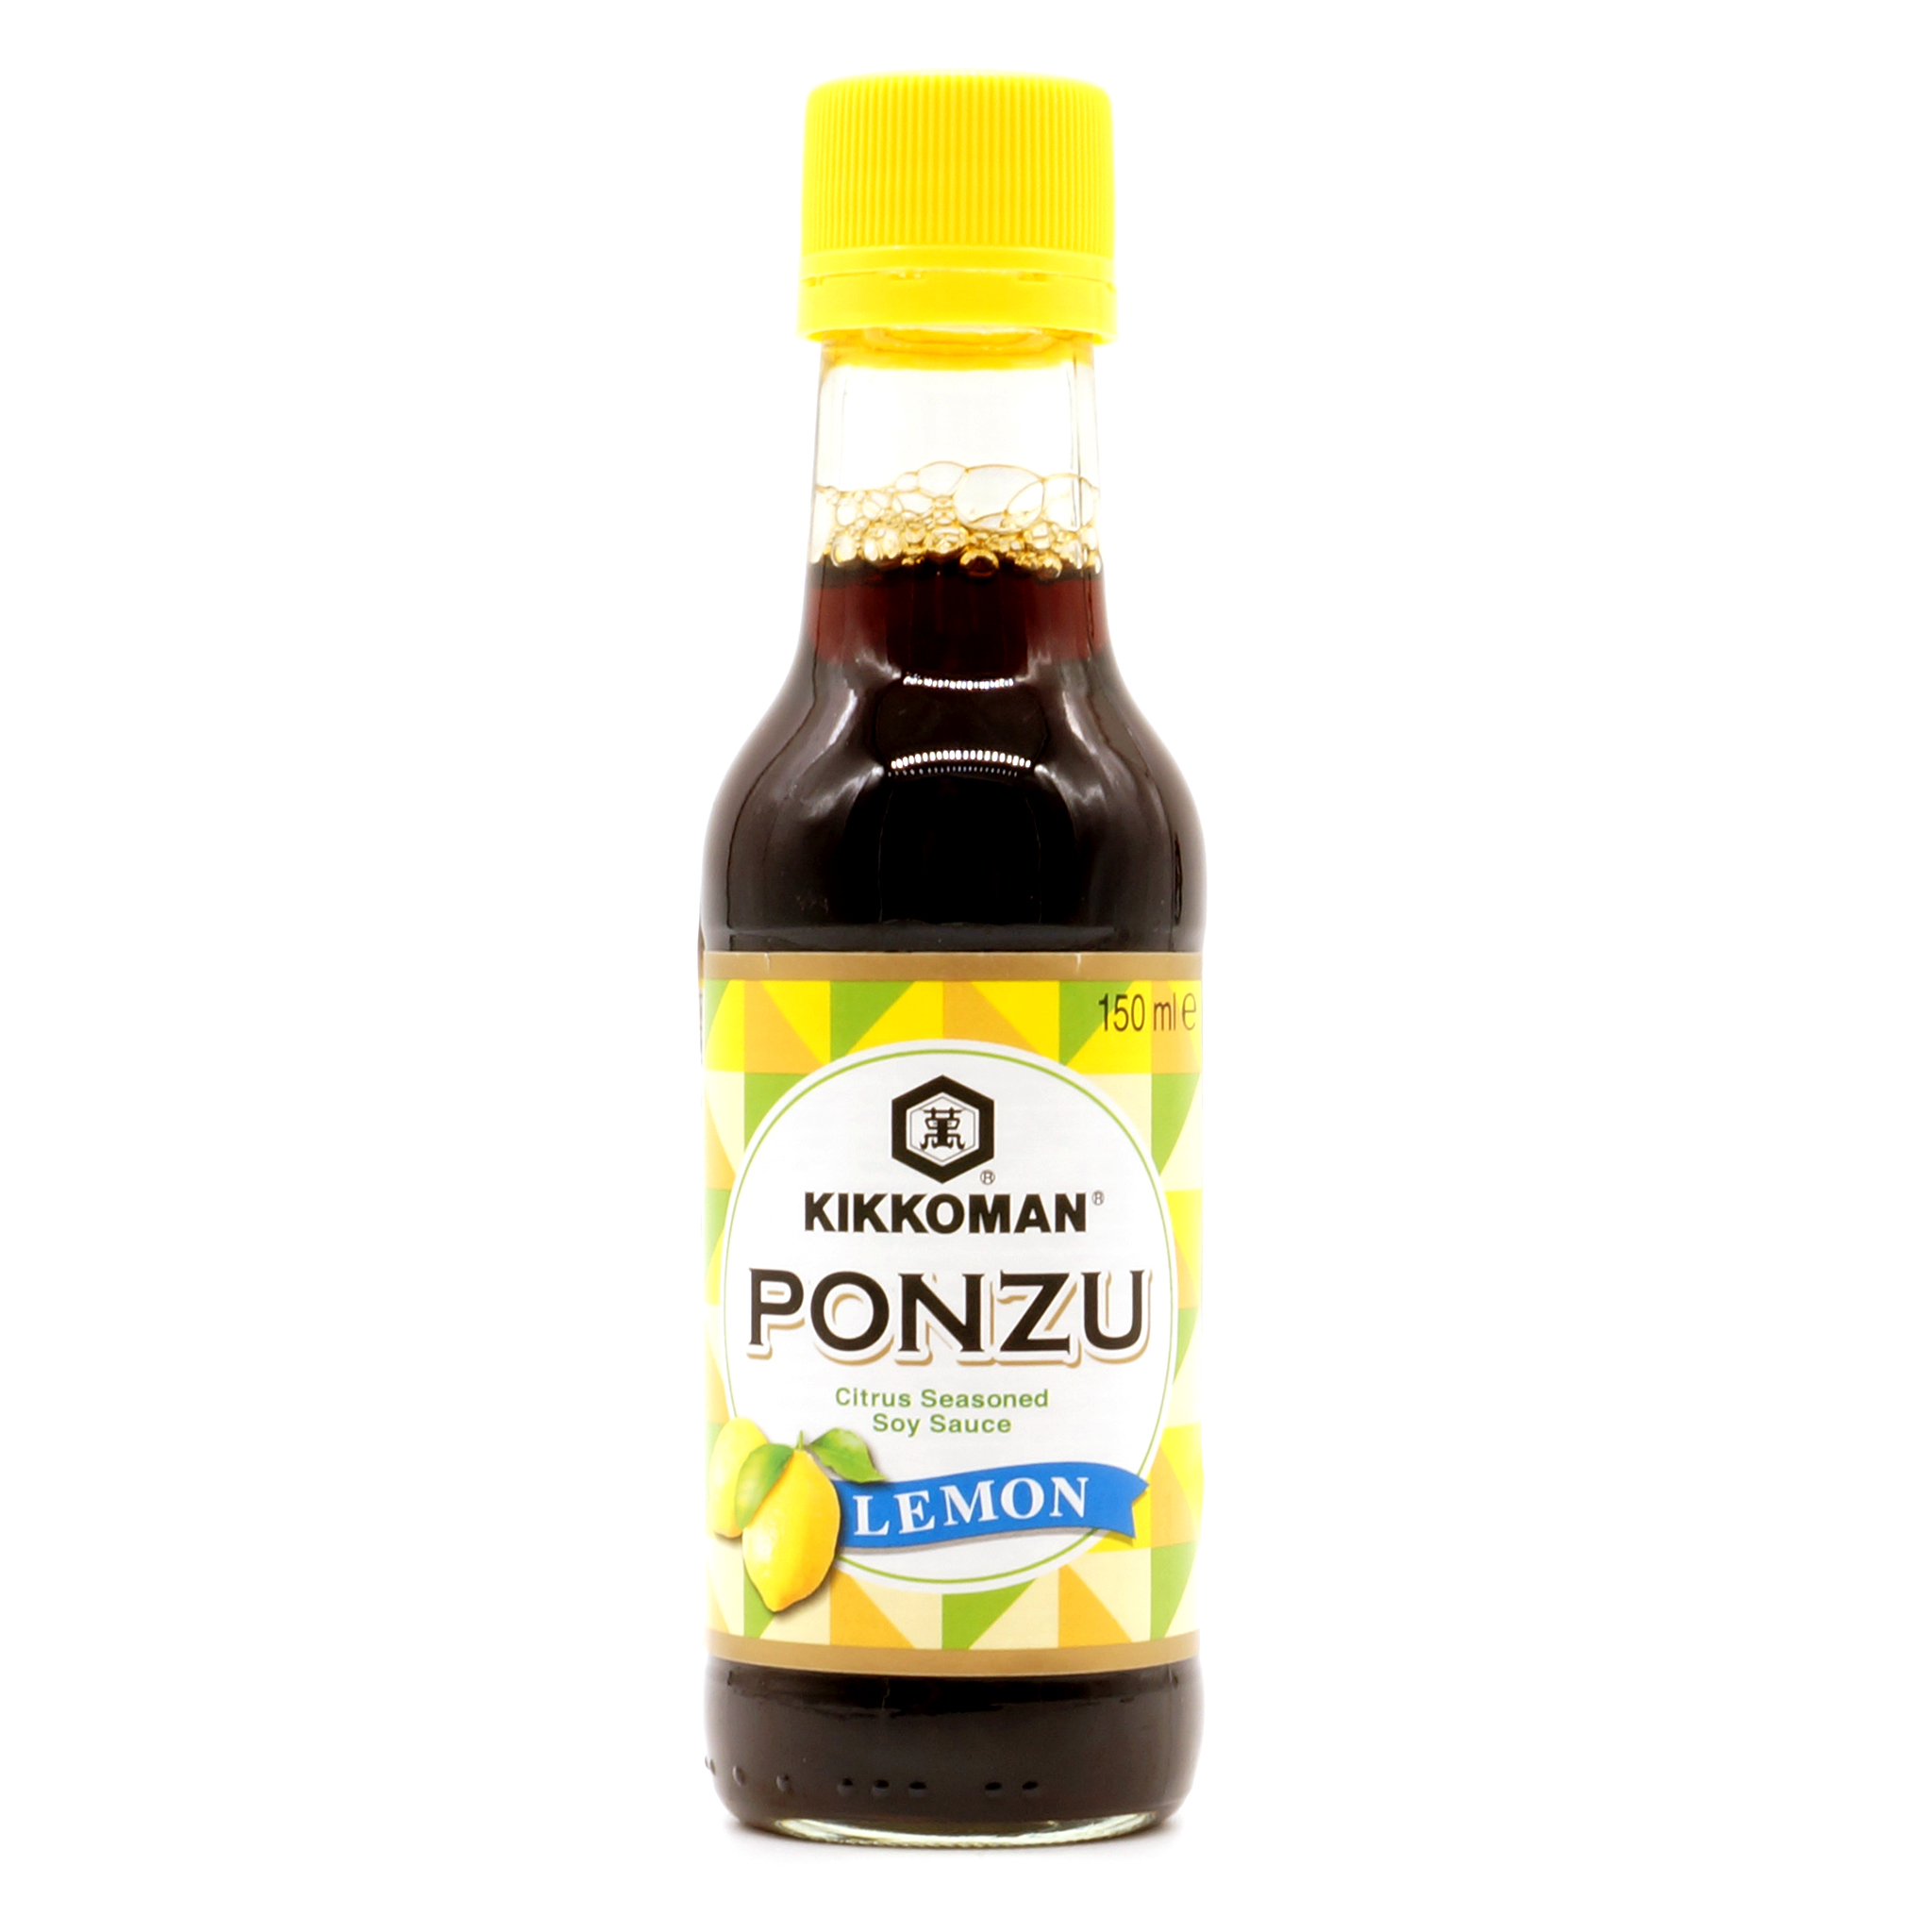 Ponzu Sojasauce mit Zitrone - Kikkoman - 150ml